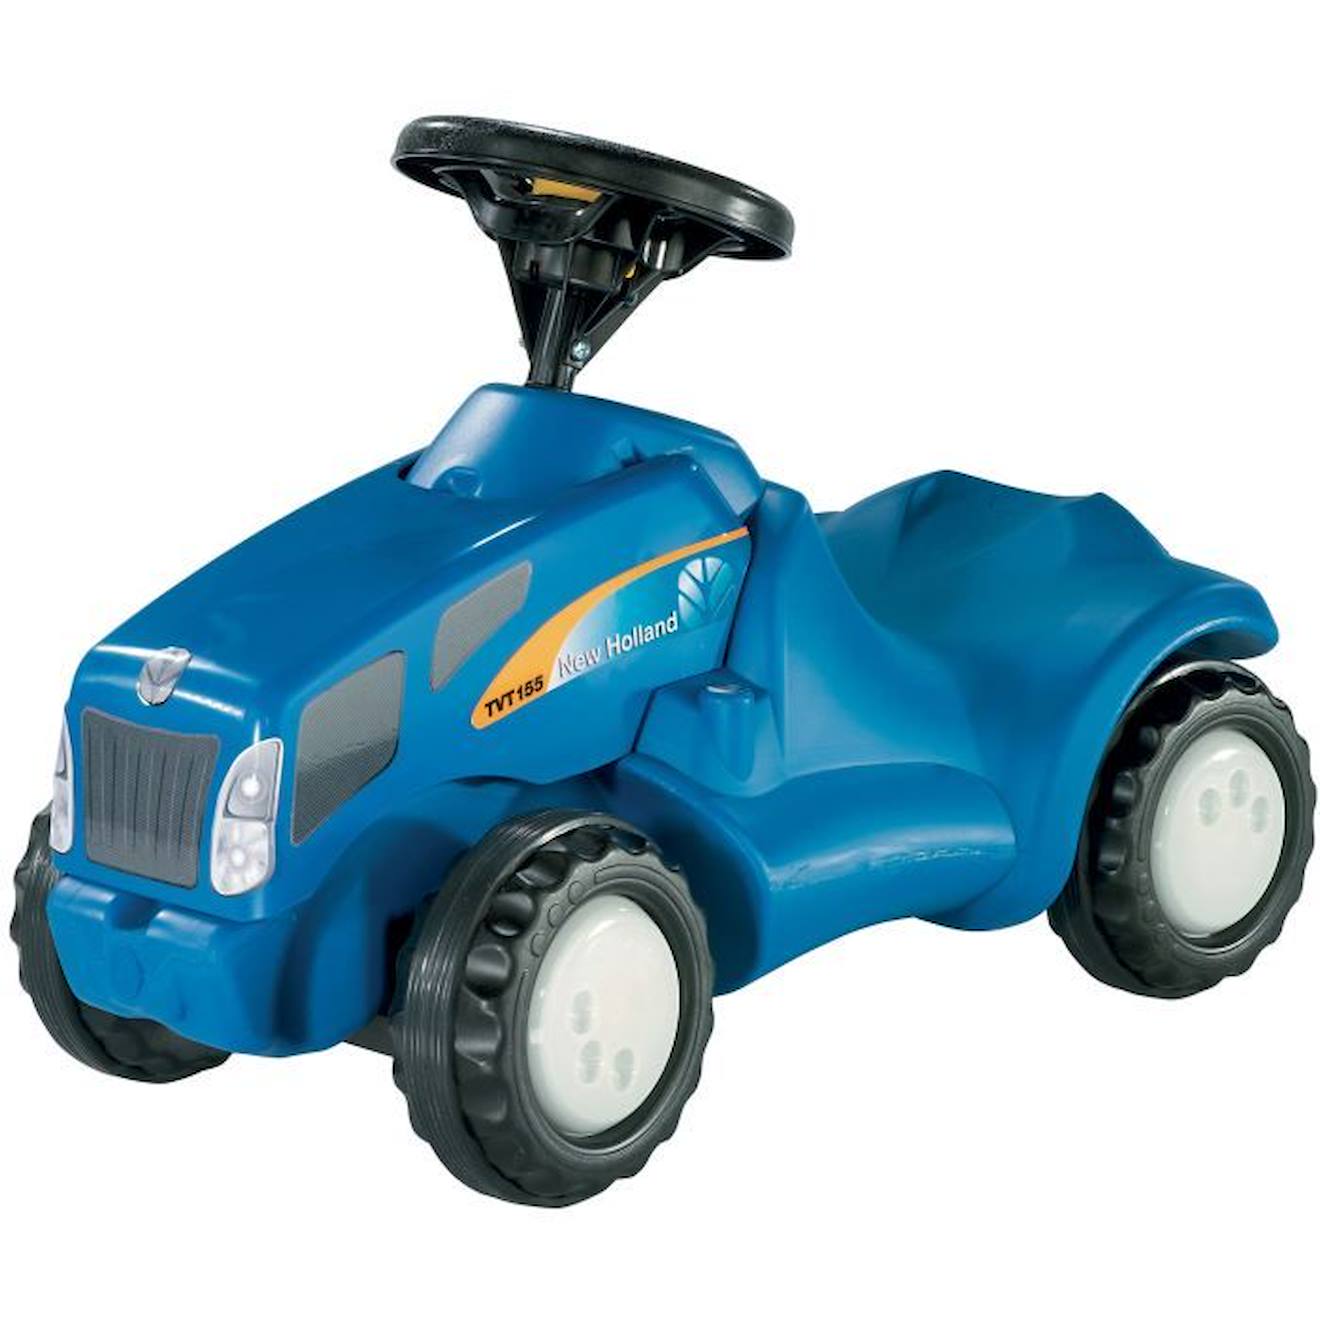 Porteur Rolly Toys New Holland T6010 - Pour Enfant De 18 Mois À 2 Ans - Bleu Bleu